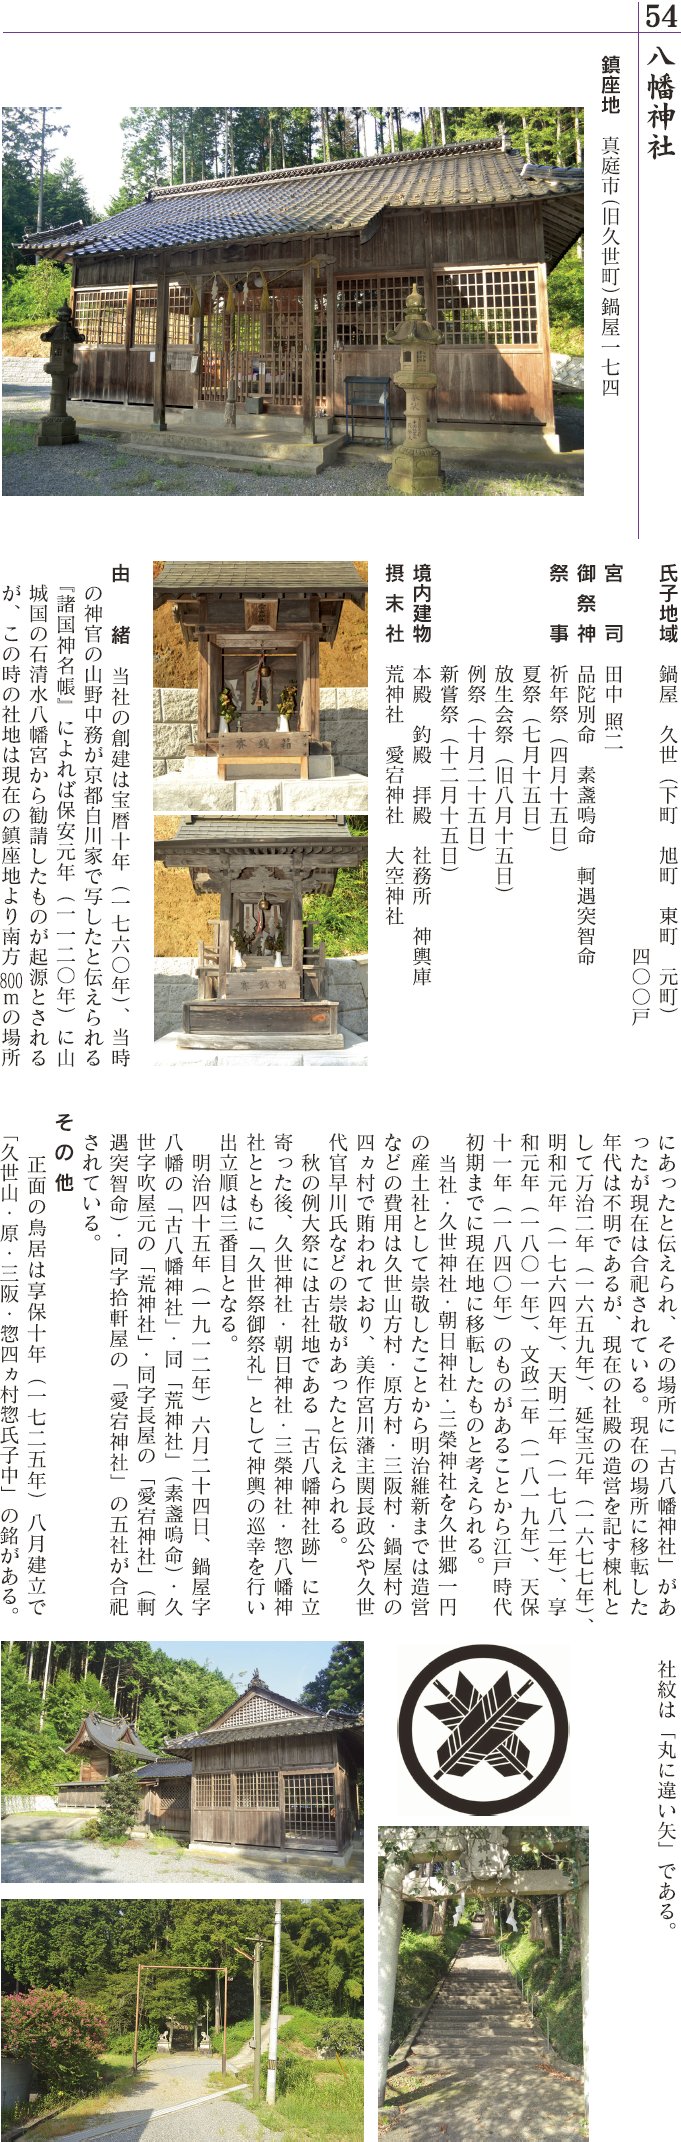 54 鍋屋八幡神社